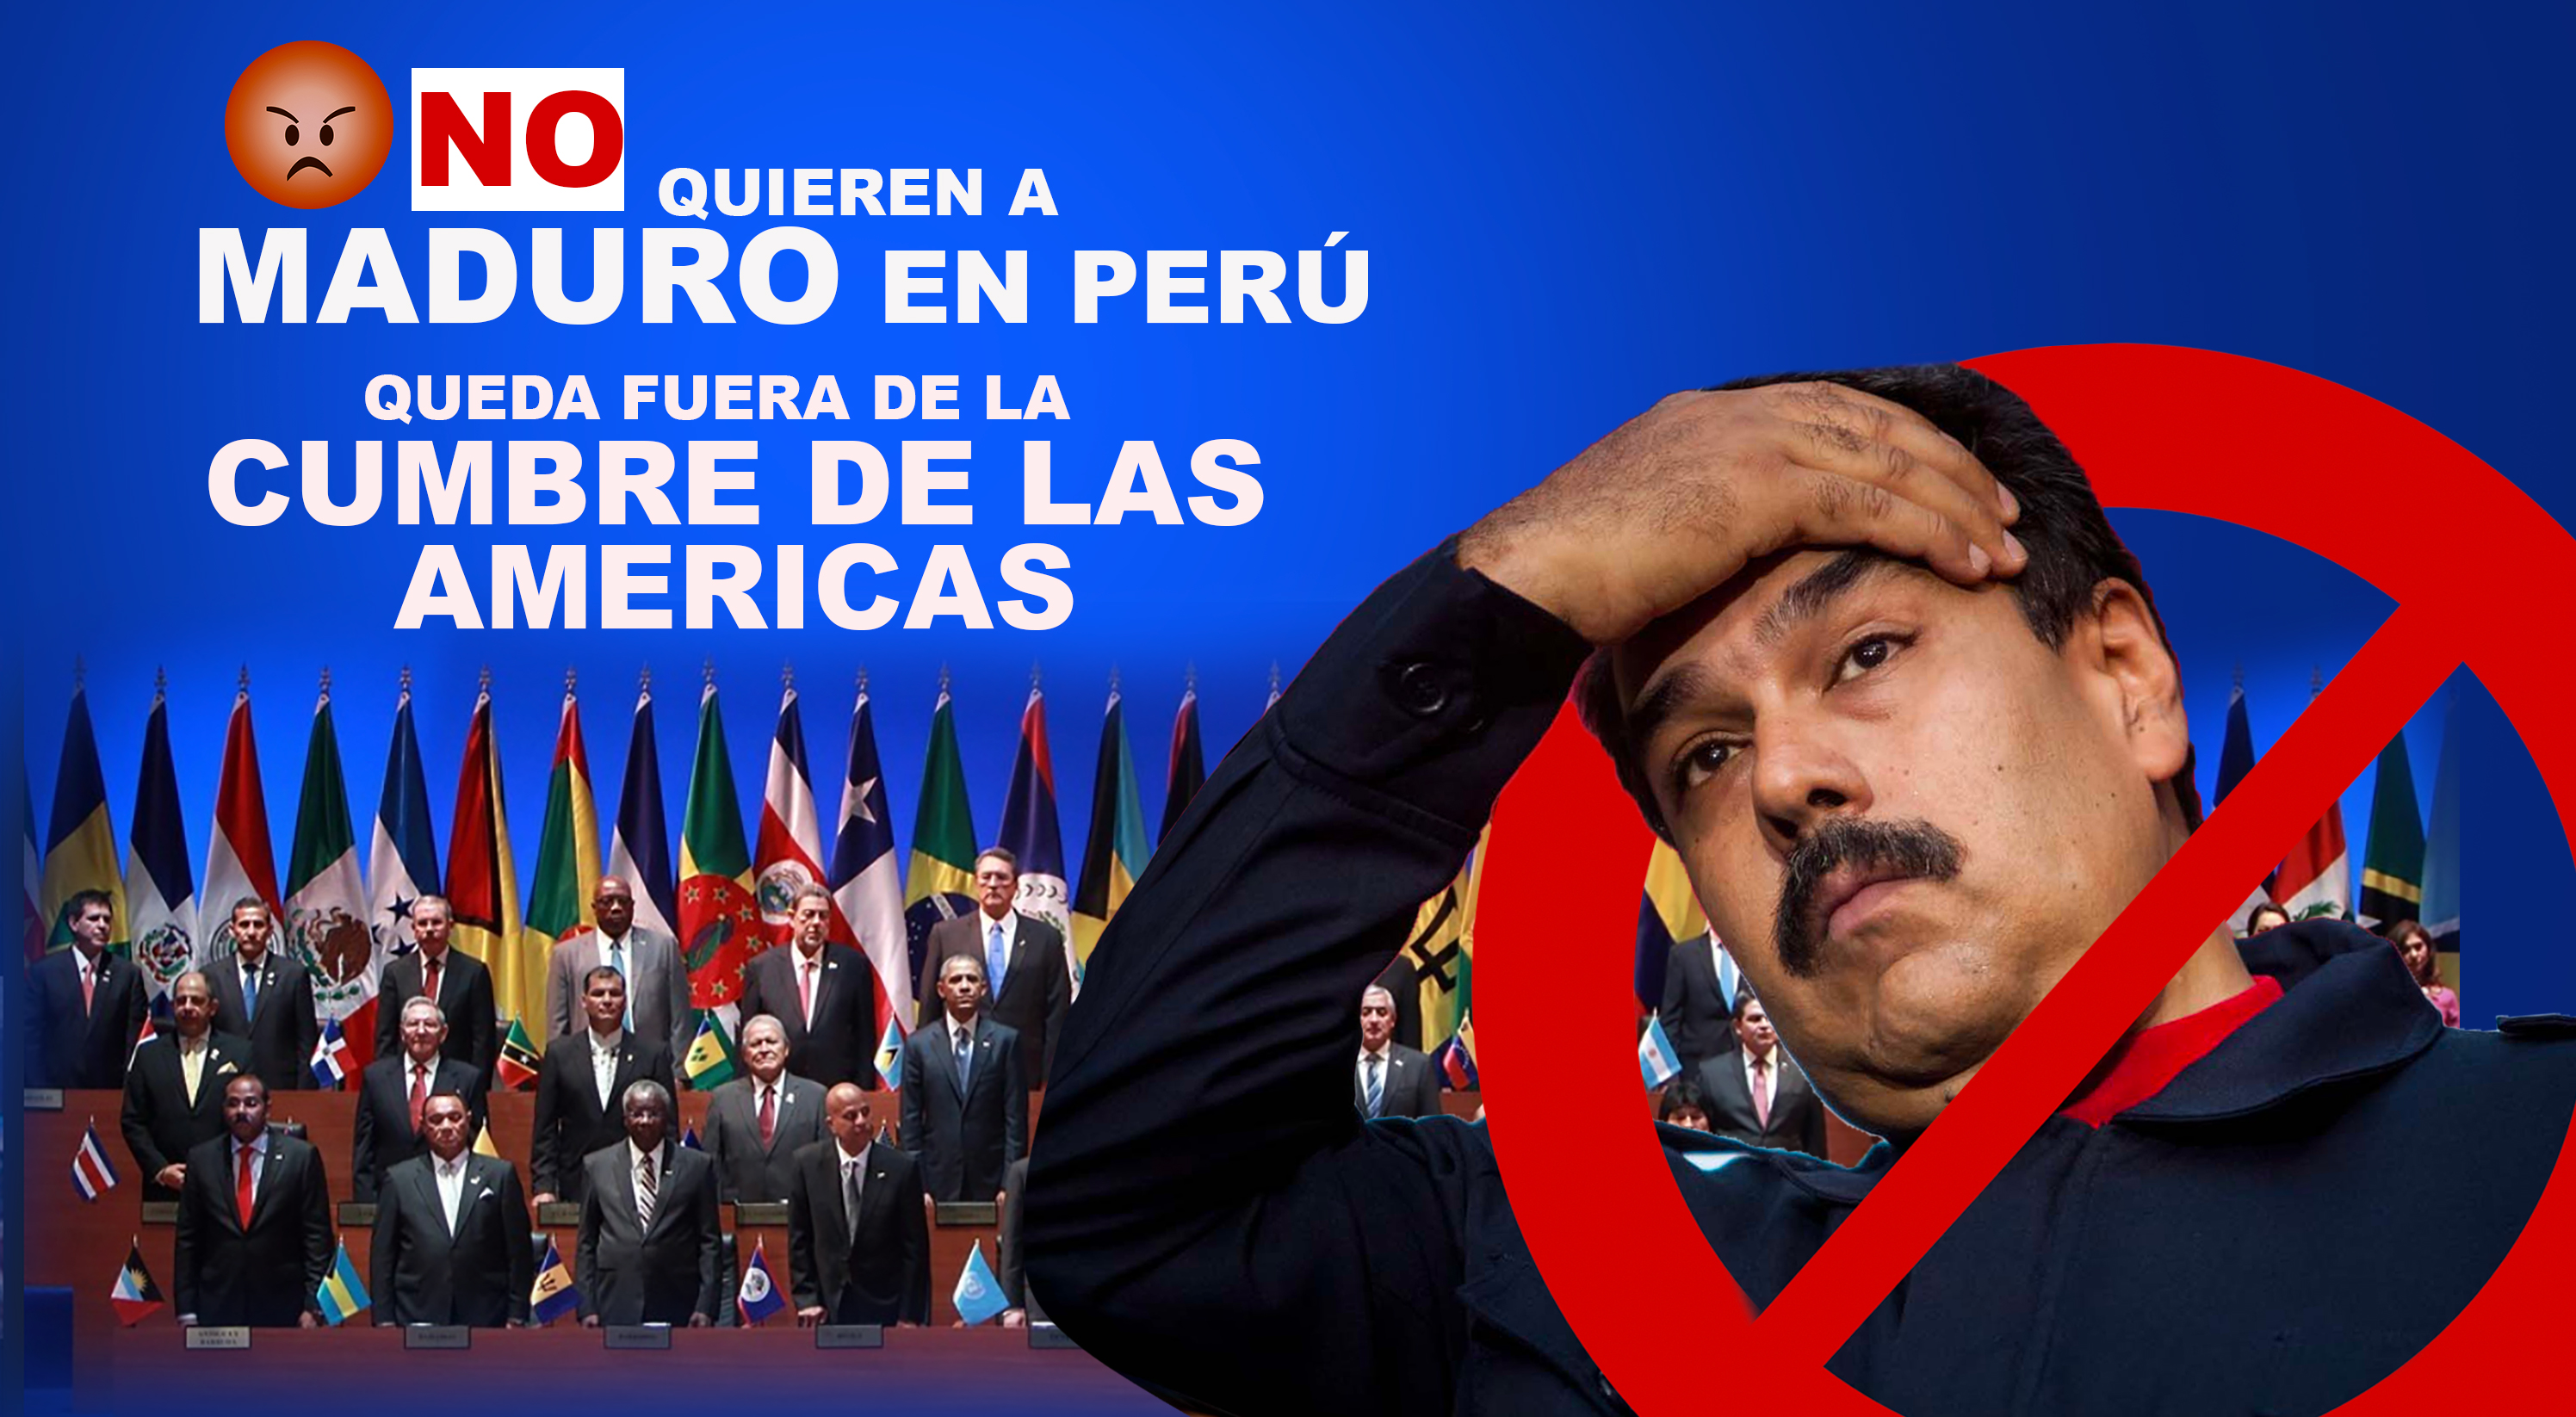 Danilo Viaja A Lima A La Cumbre De Las Américas Y Maduro No Estaba Invitado – Hoy Mismo